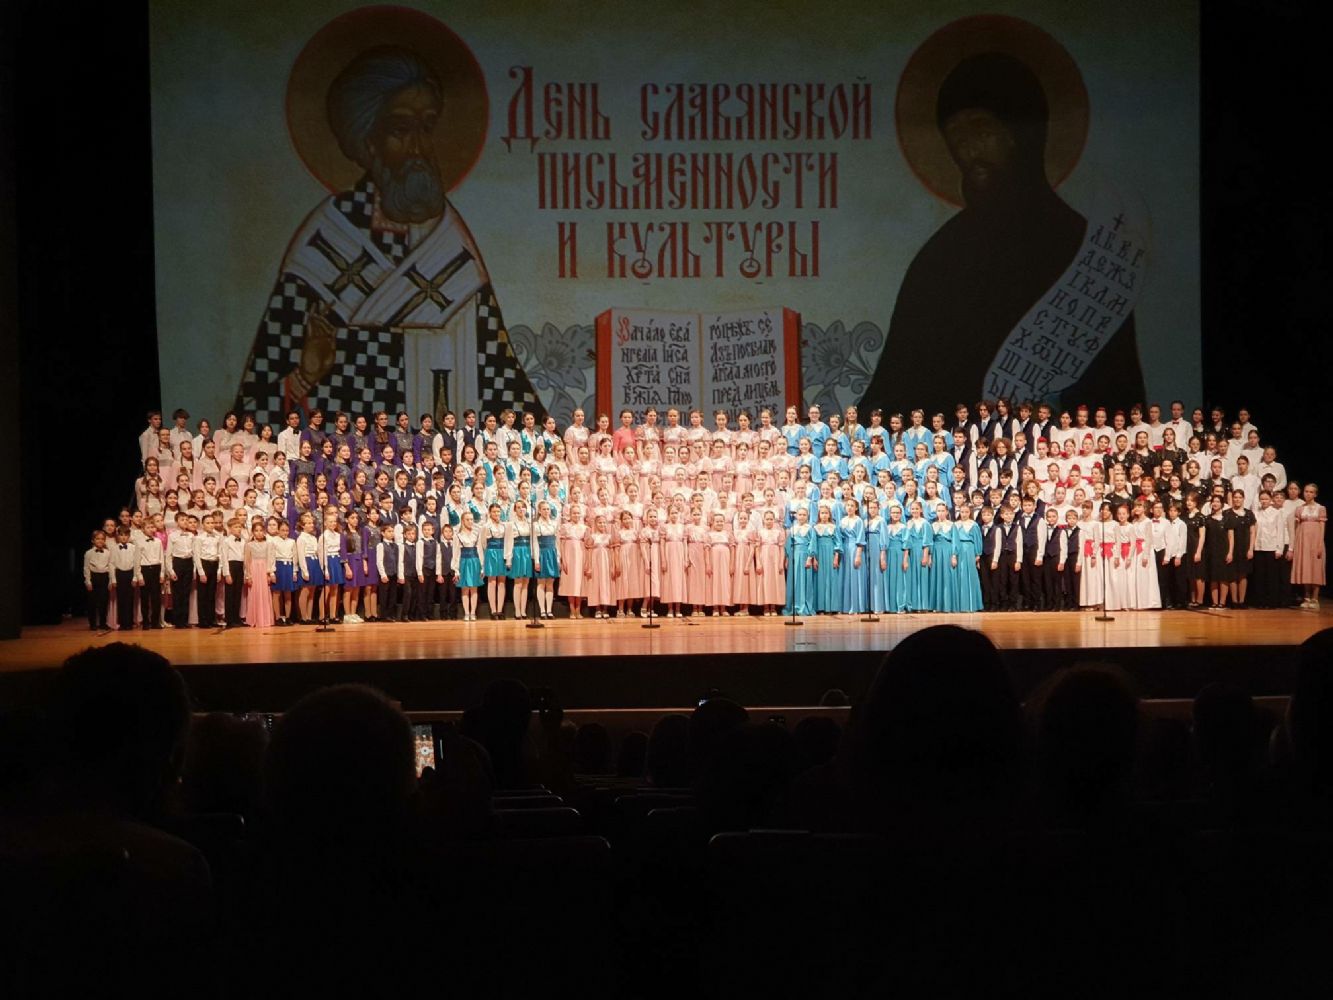 Праздничный концерт показали на Приморской сцене Мариинского театра в честь Дня славянской письменности и культуры